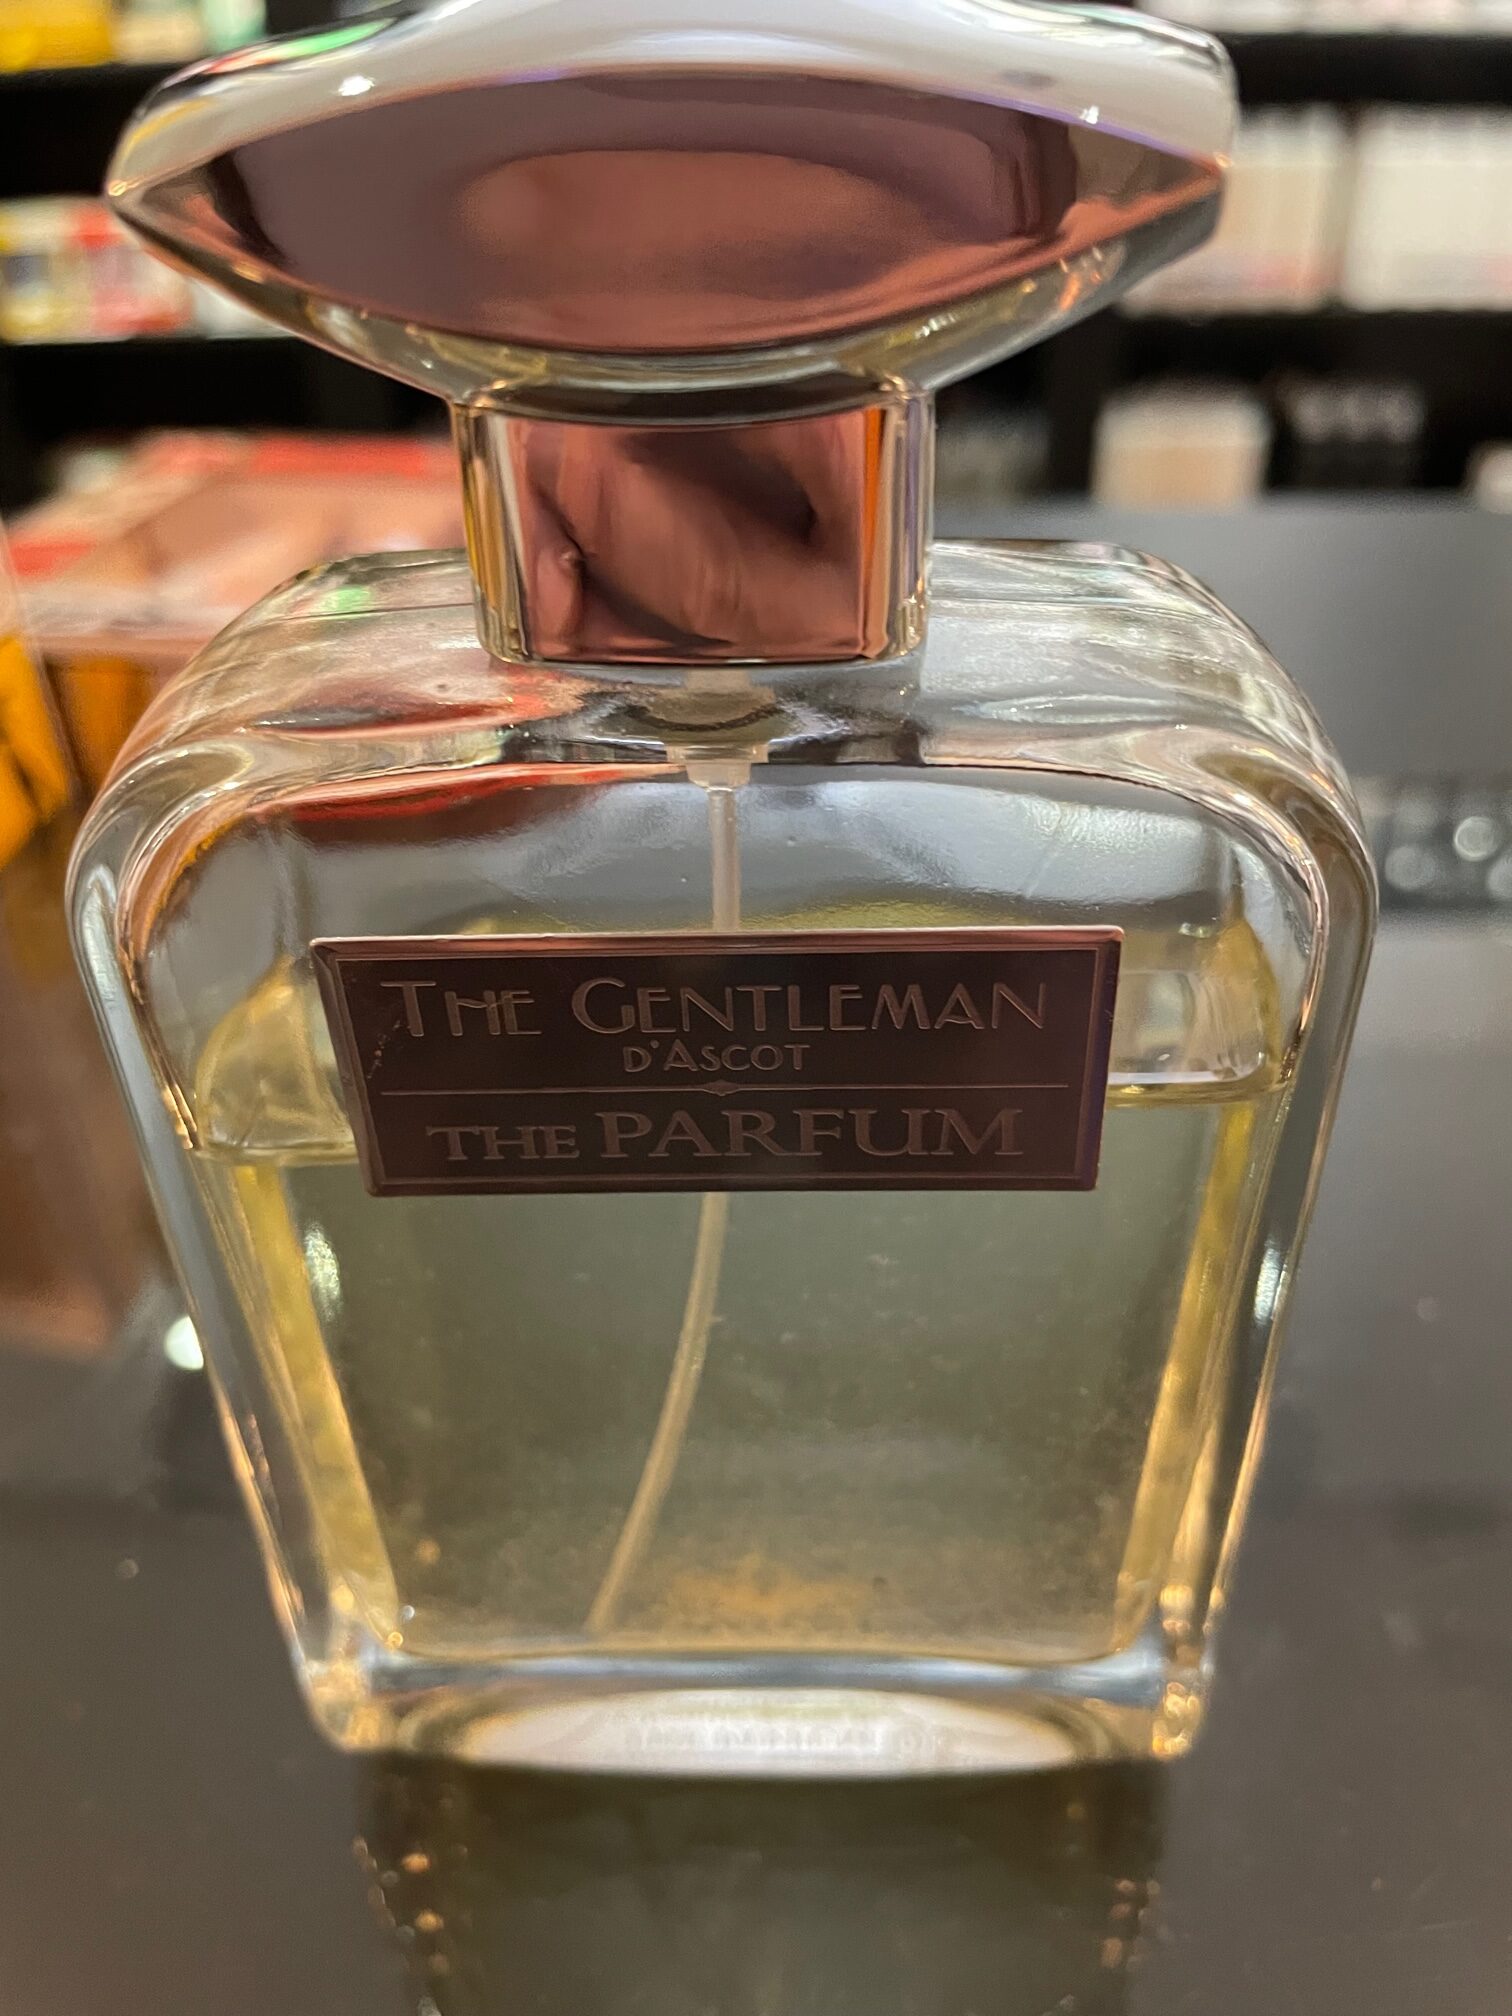 The gentleman